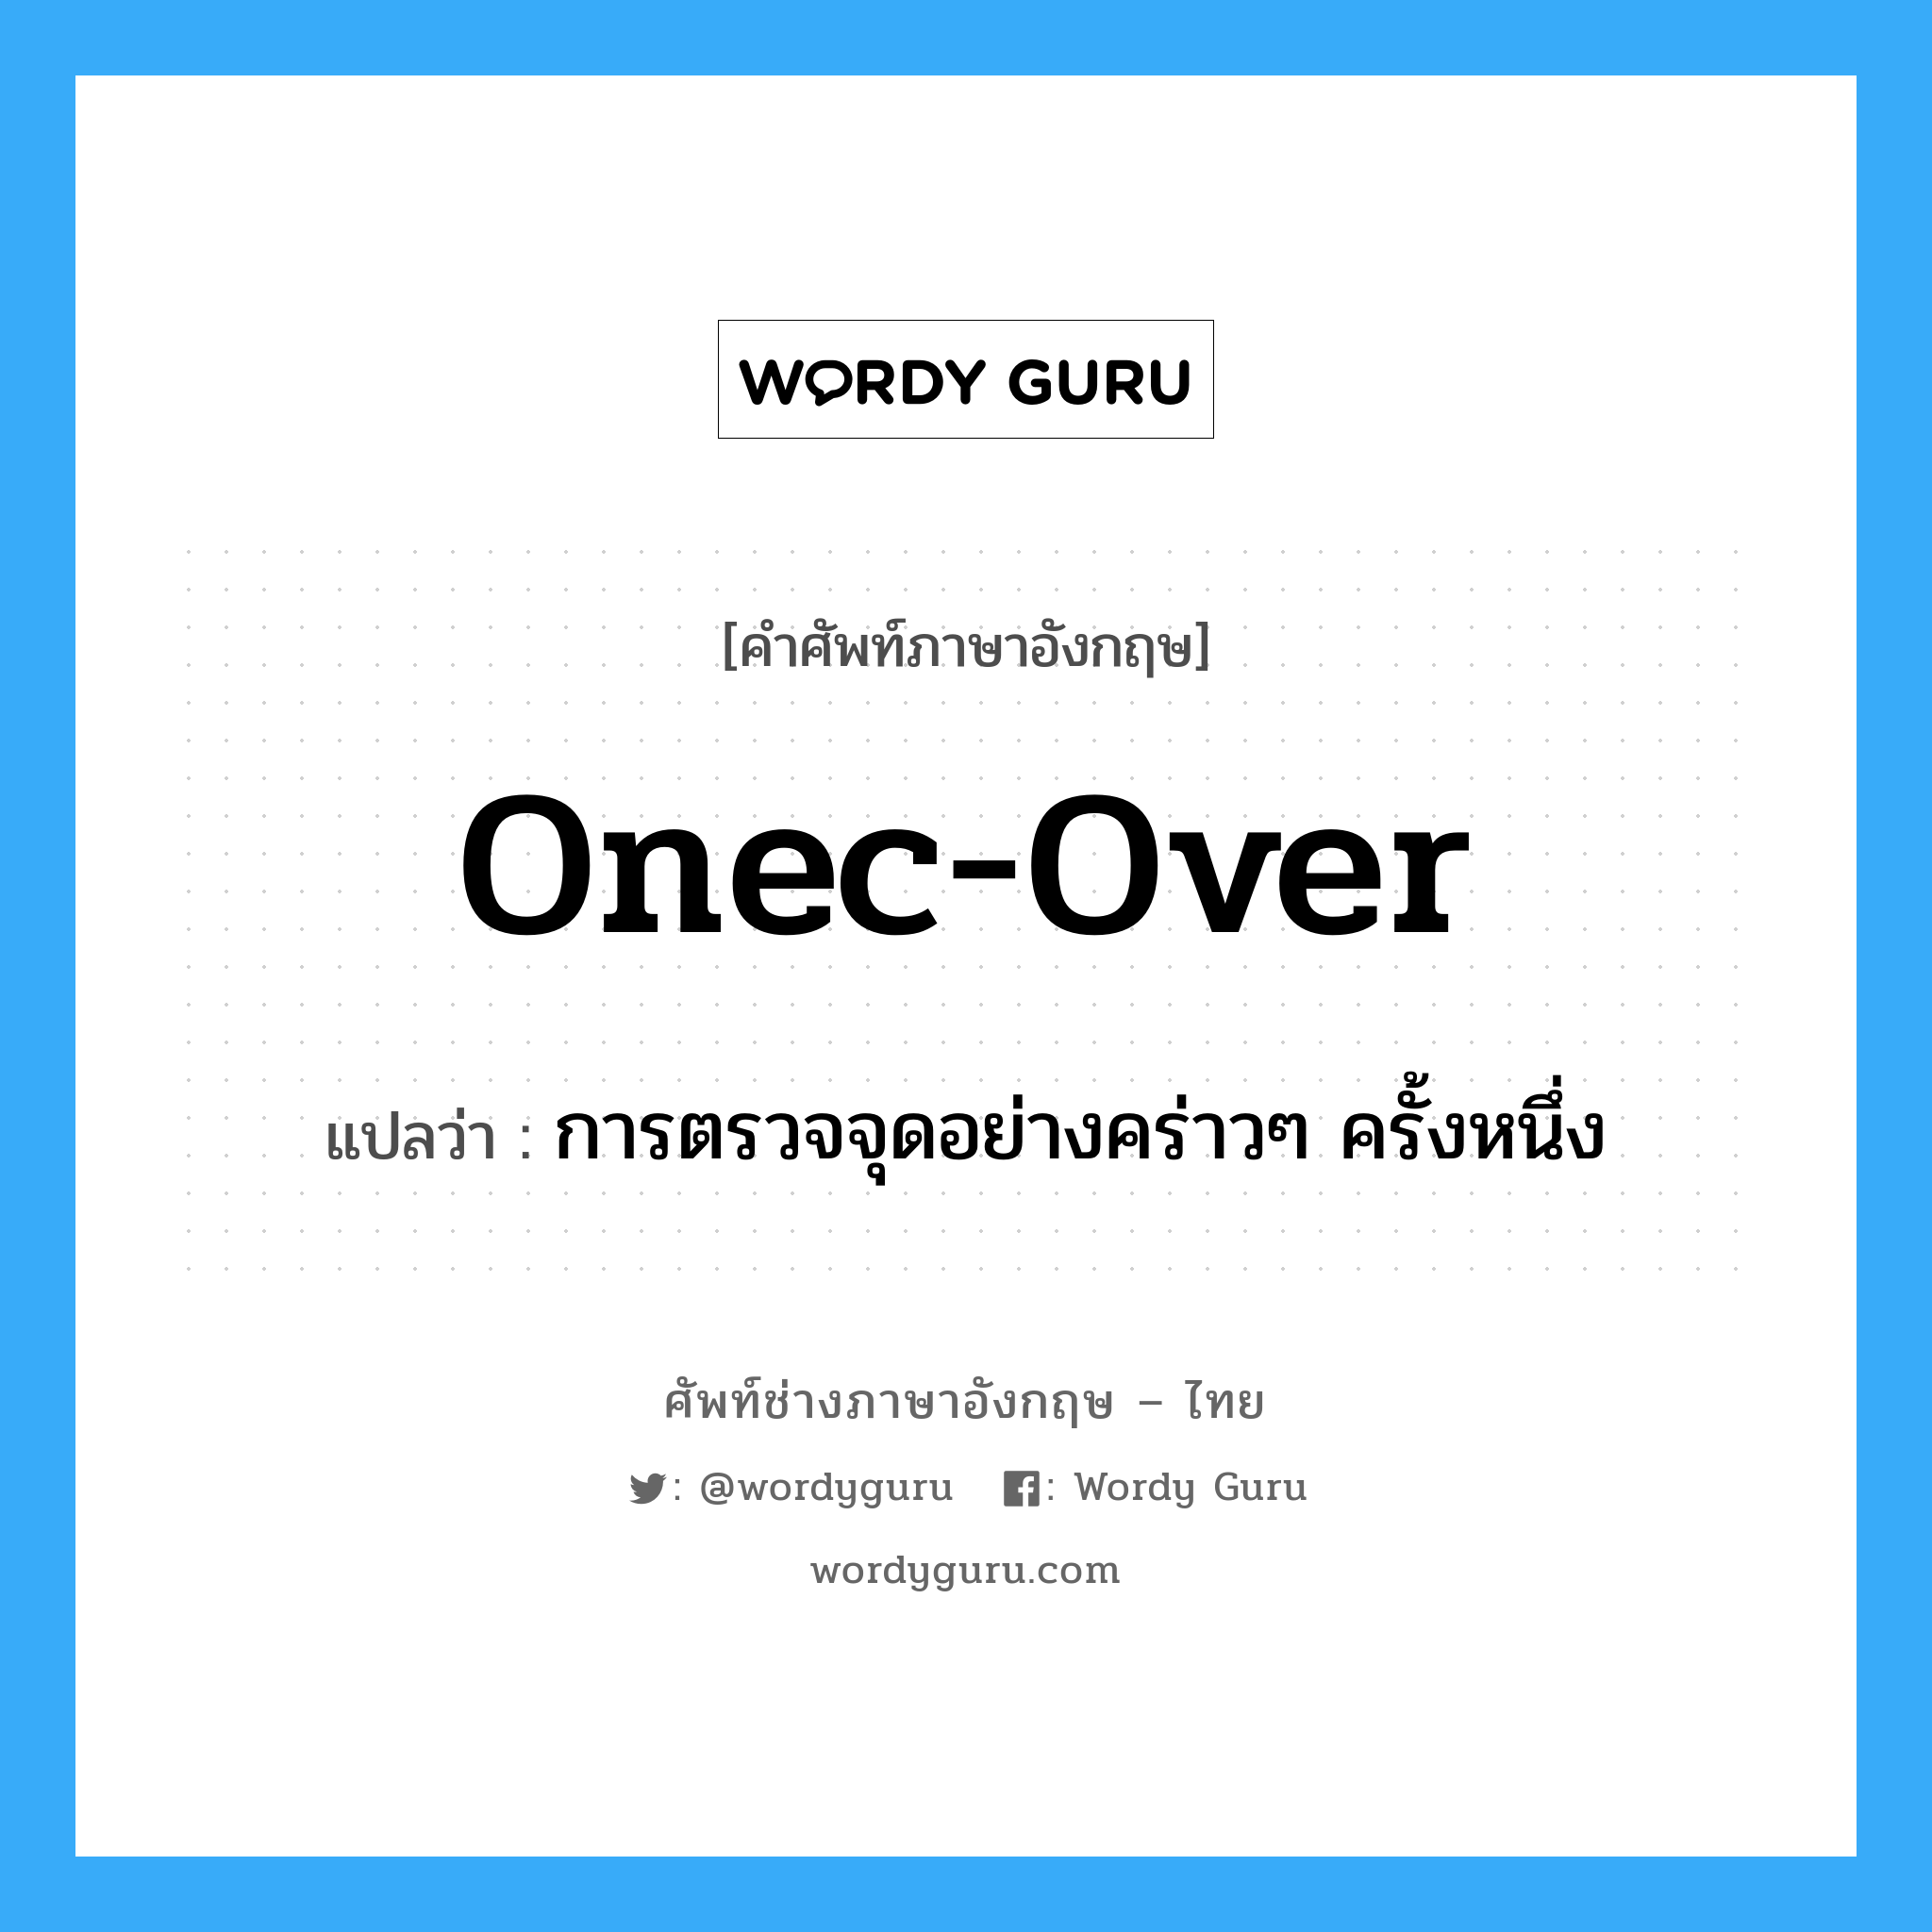 onec-over แปลว่า?, คำศัพท์ช่างภาษาอังกฤษ - ไทย onec-over คำศัพท์ภาษาอังกฤษ onec-over แปลว่า การตรวจจุดอย่างคร่าวๆ ครั้งหนึ่ง